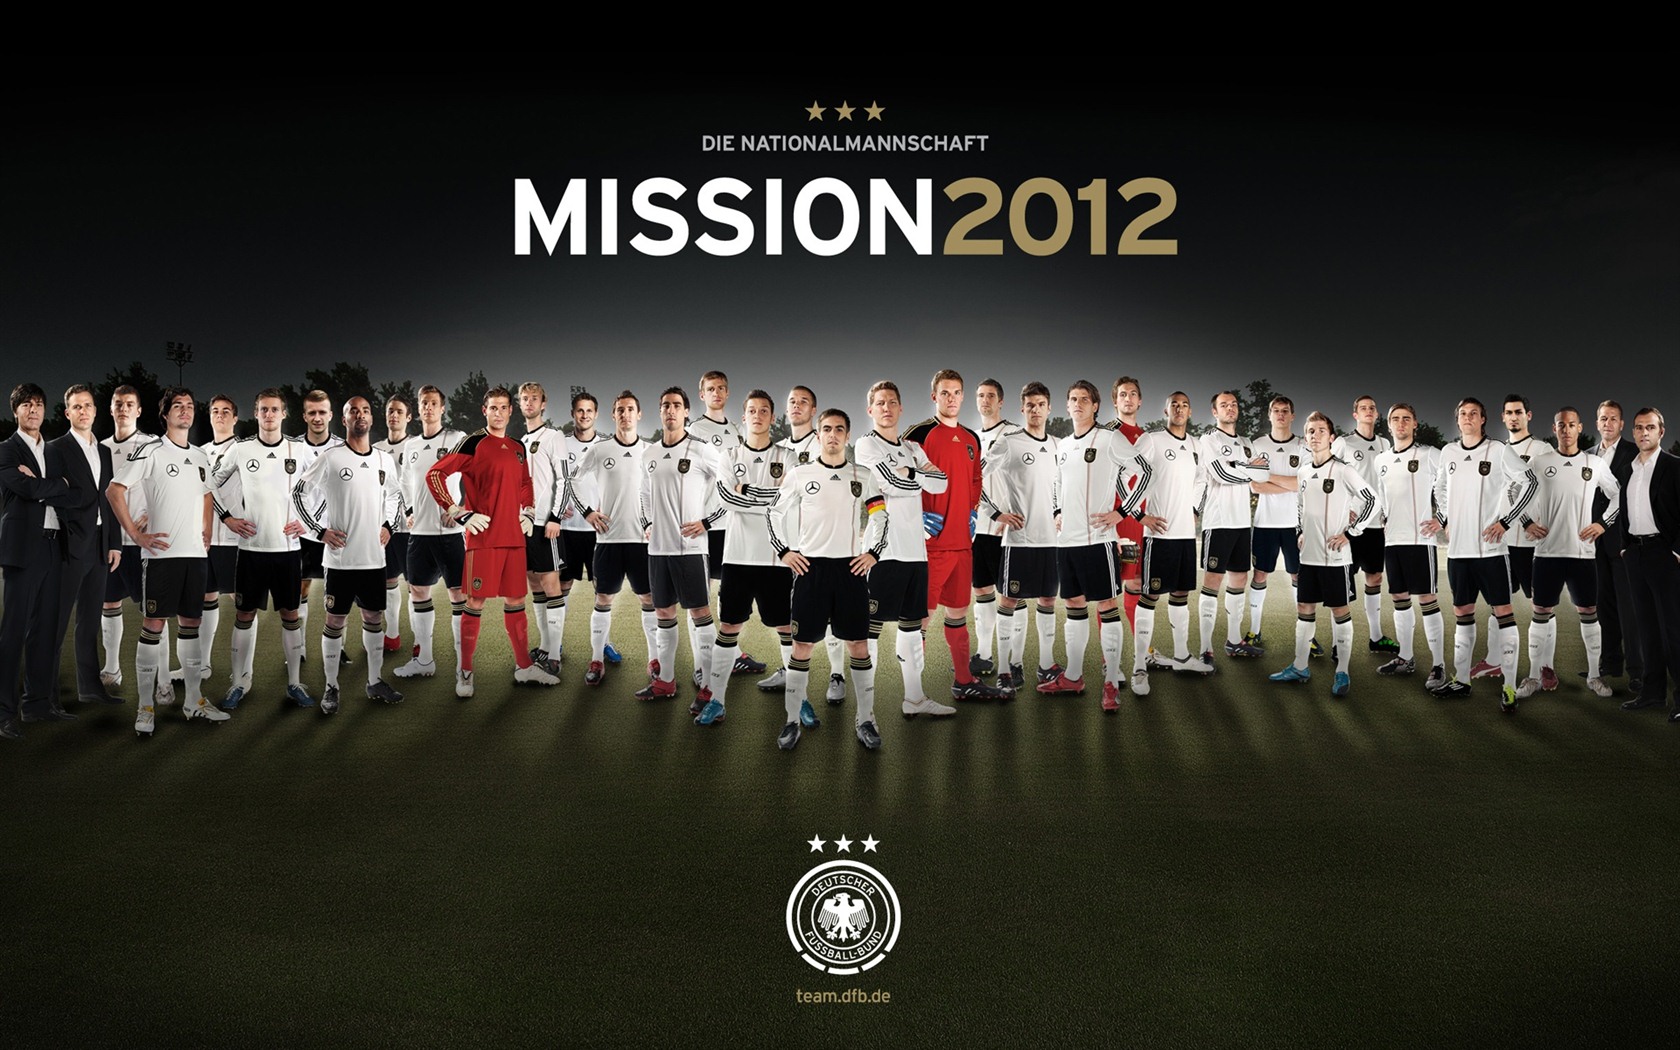 UEFA EURO 2012 欧洲足球锦标赛 高清壁纸(二)5 - 1680x1050